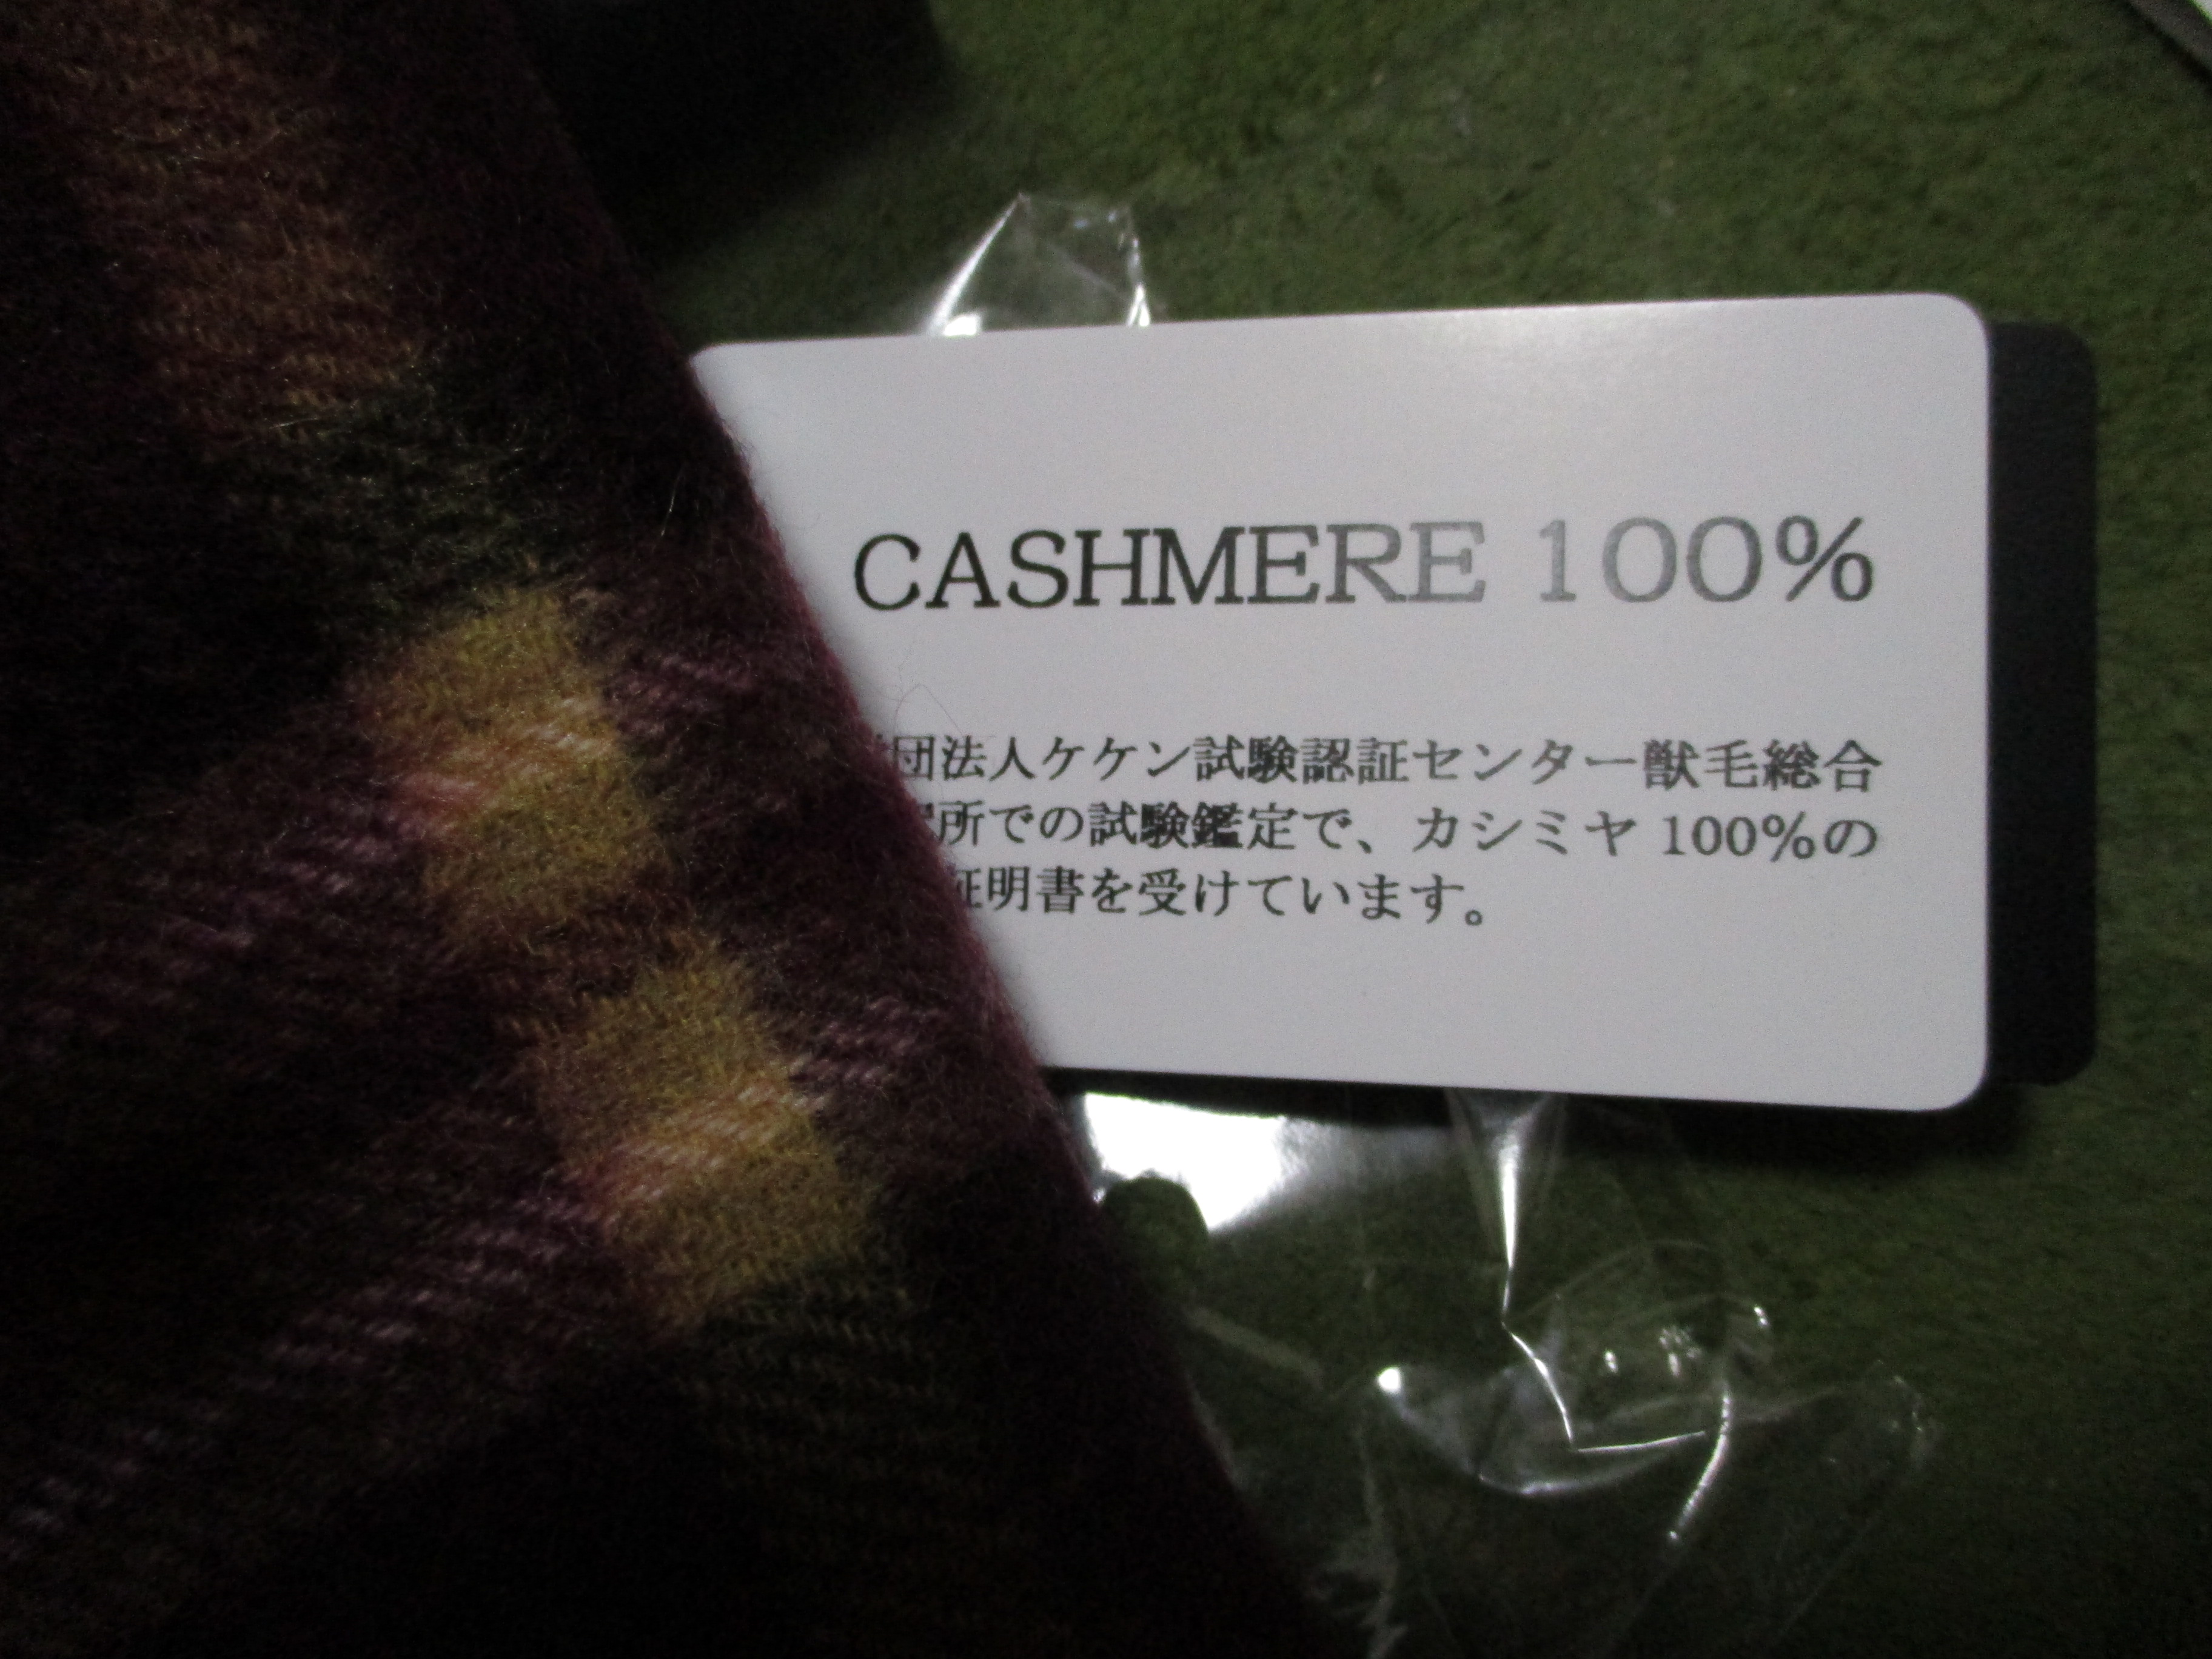 一番簡単な防寒対策は、カシミヤのセーターとマフラーをすること | 札幌移住ブログ みかげ